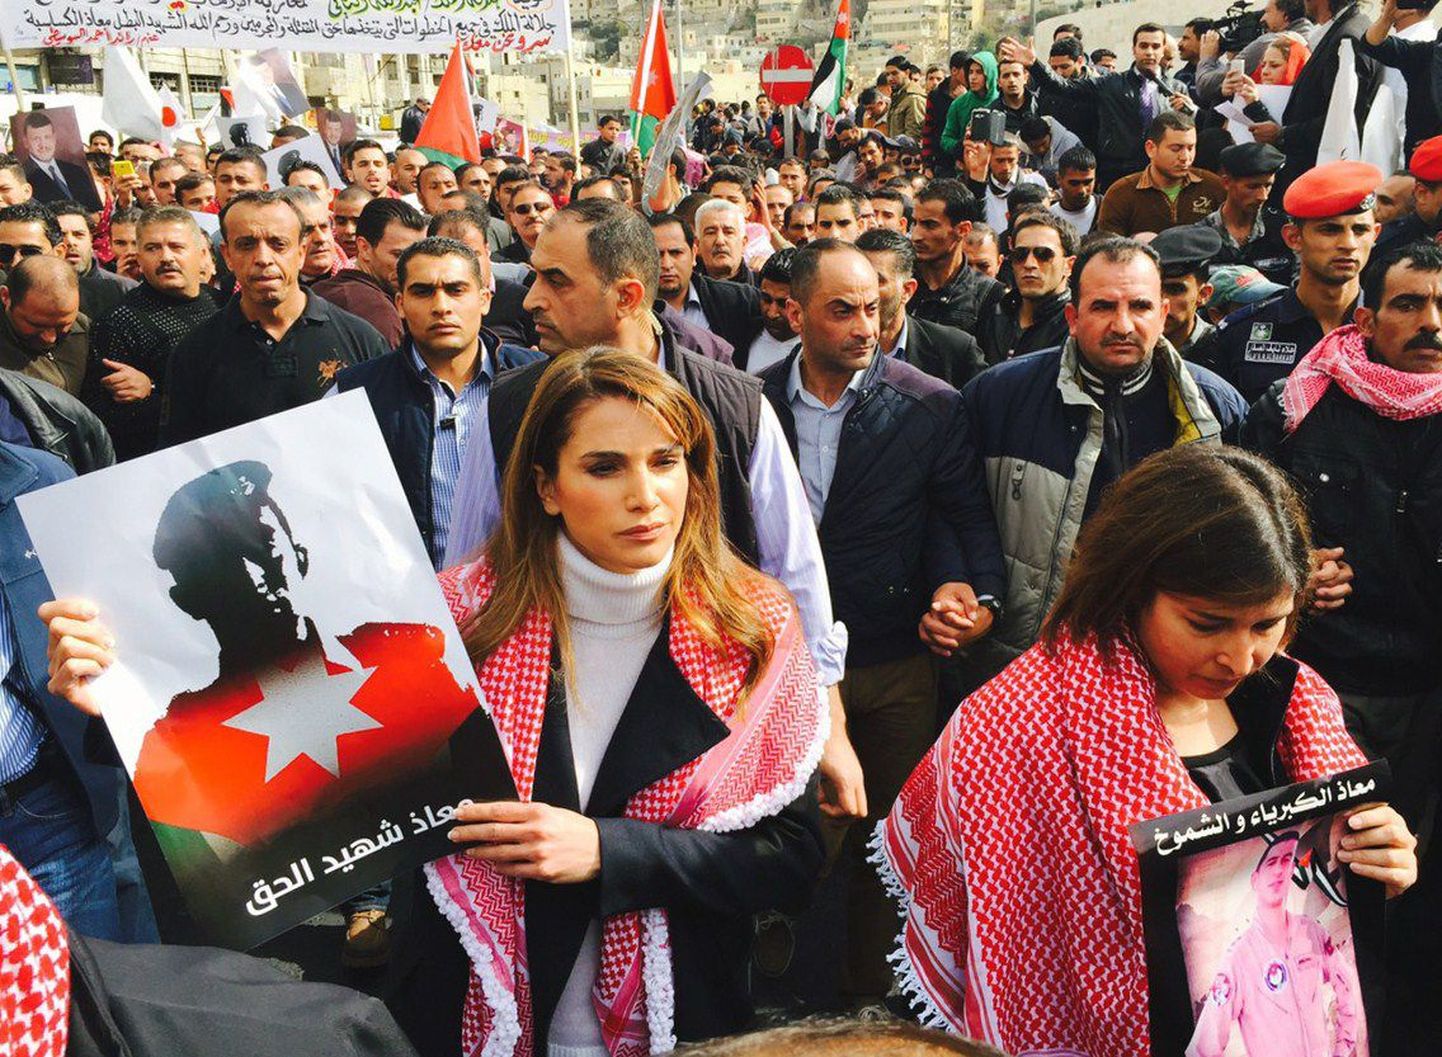 Jordaania kuninganna Rania veebruaris Ammanis peetud meeleavaldusel näitamaks solidaarsust islamistide tapetud piloodiga.